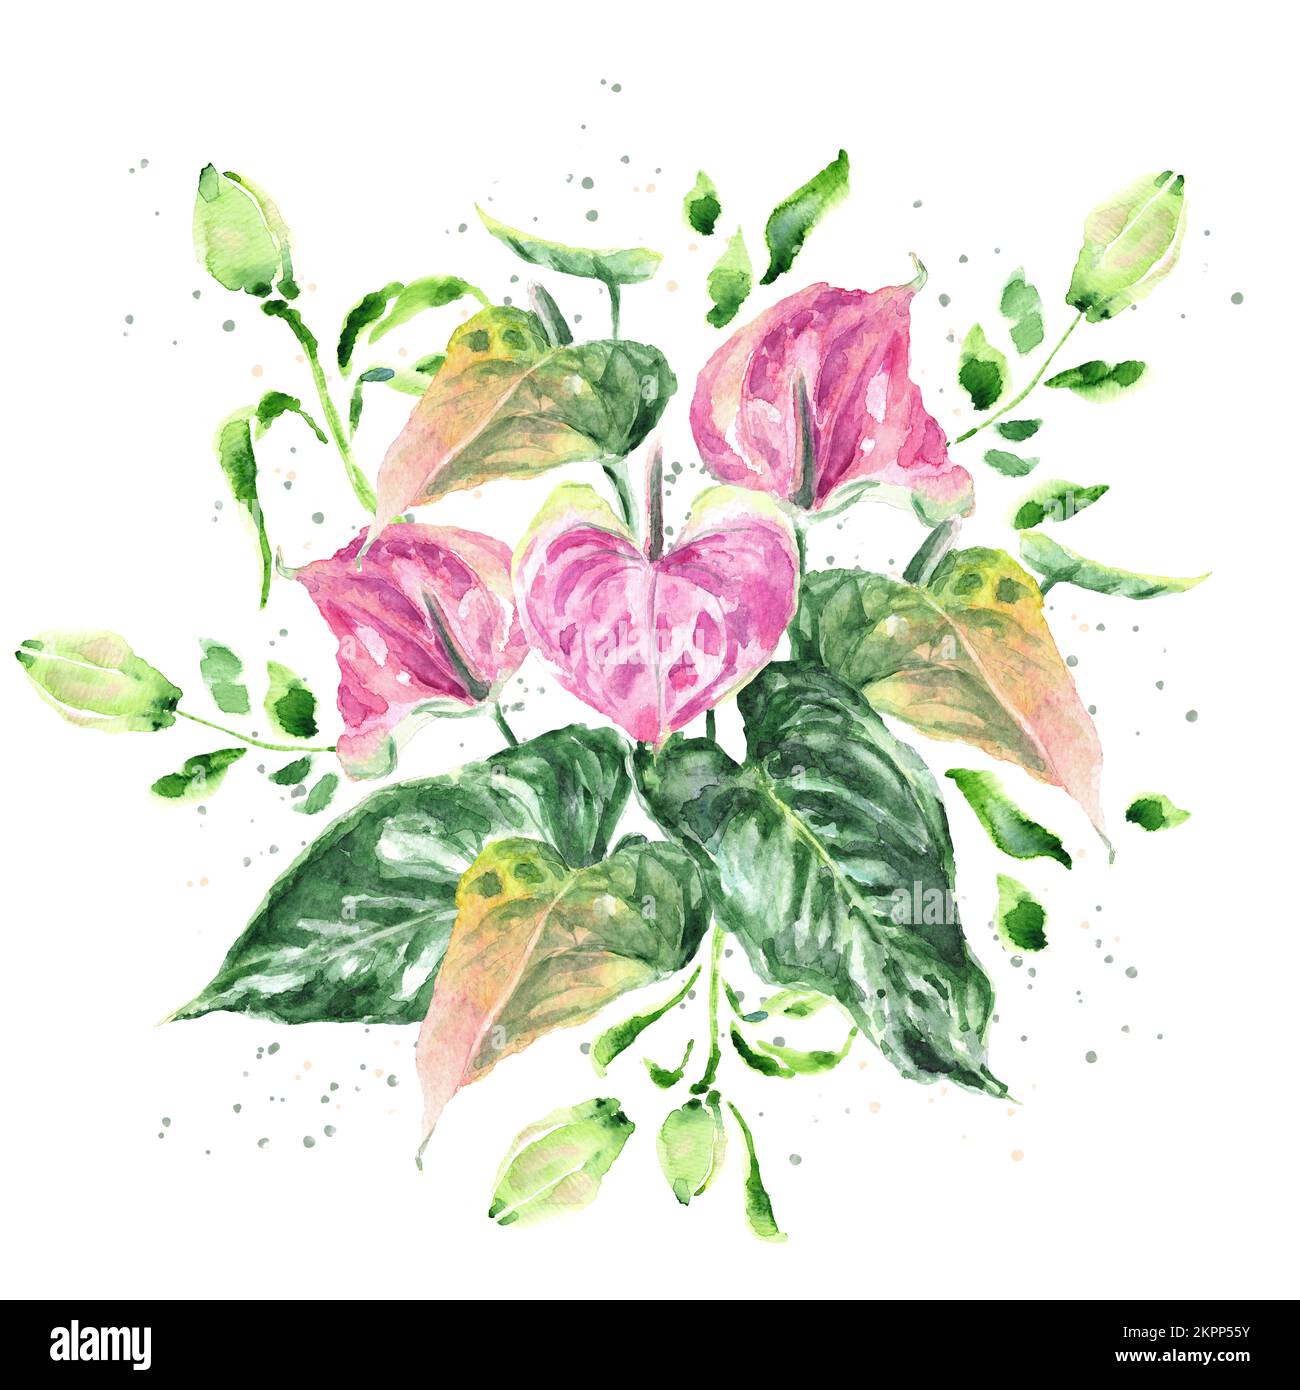 Bouquet de fleurs d'Anthurium (Fleur Flamingo) et bourgeons de nénuphars. Illustration réaliste aquarelle dessinée à la main isolée sur fond blanc. Banque D'Images